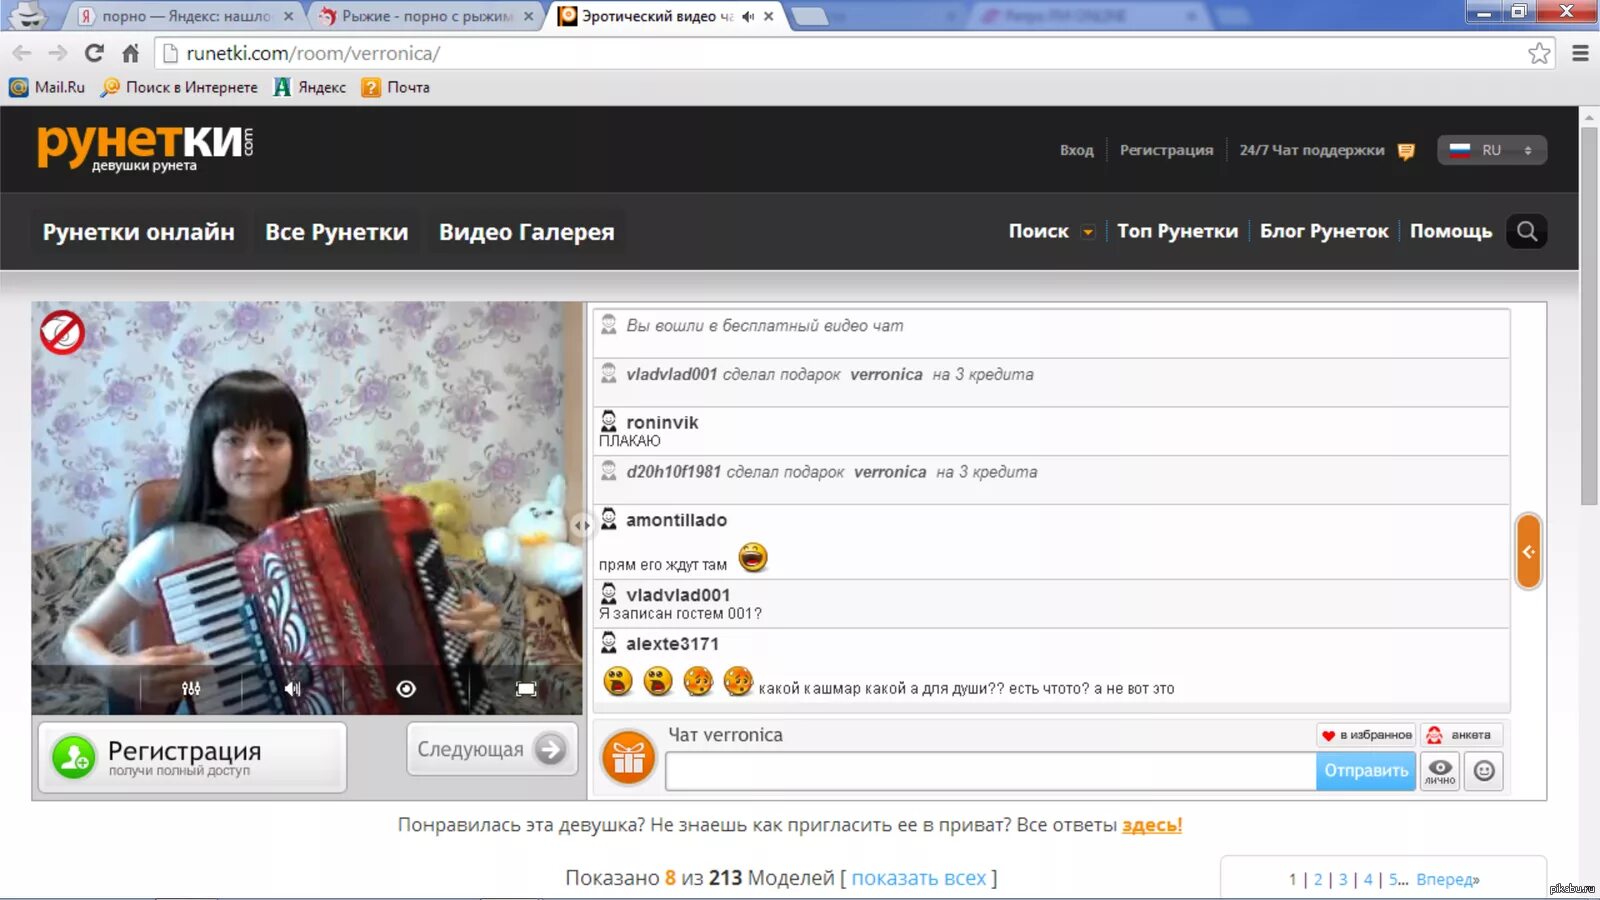 Знакомства рунетки. Видеочат с девушками рунета. Популярные сайты рунетки. Самые известные рунетки.